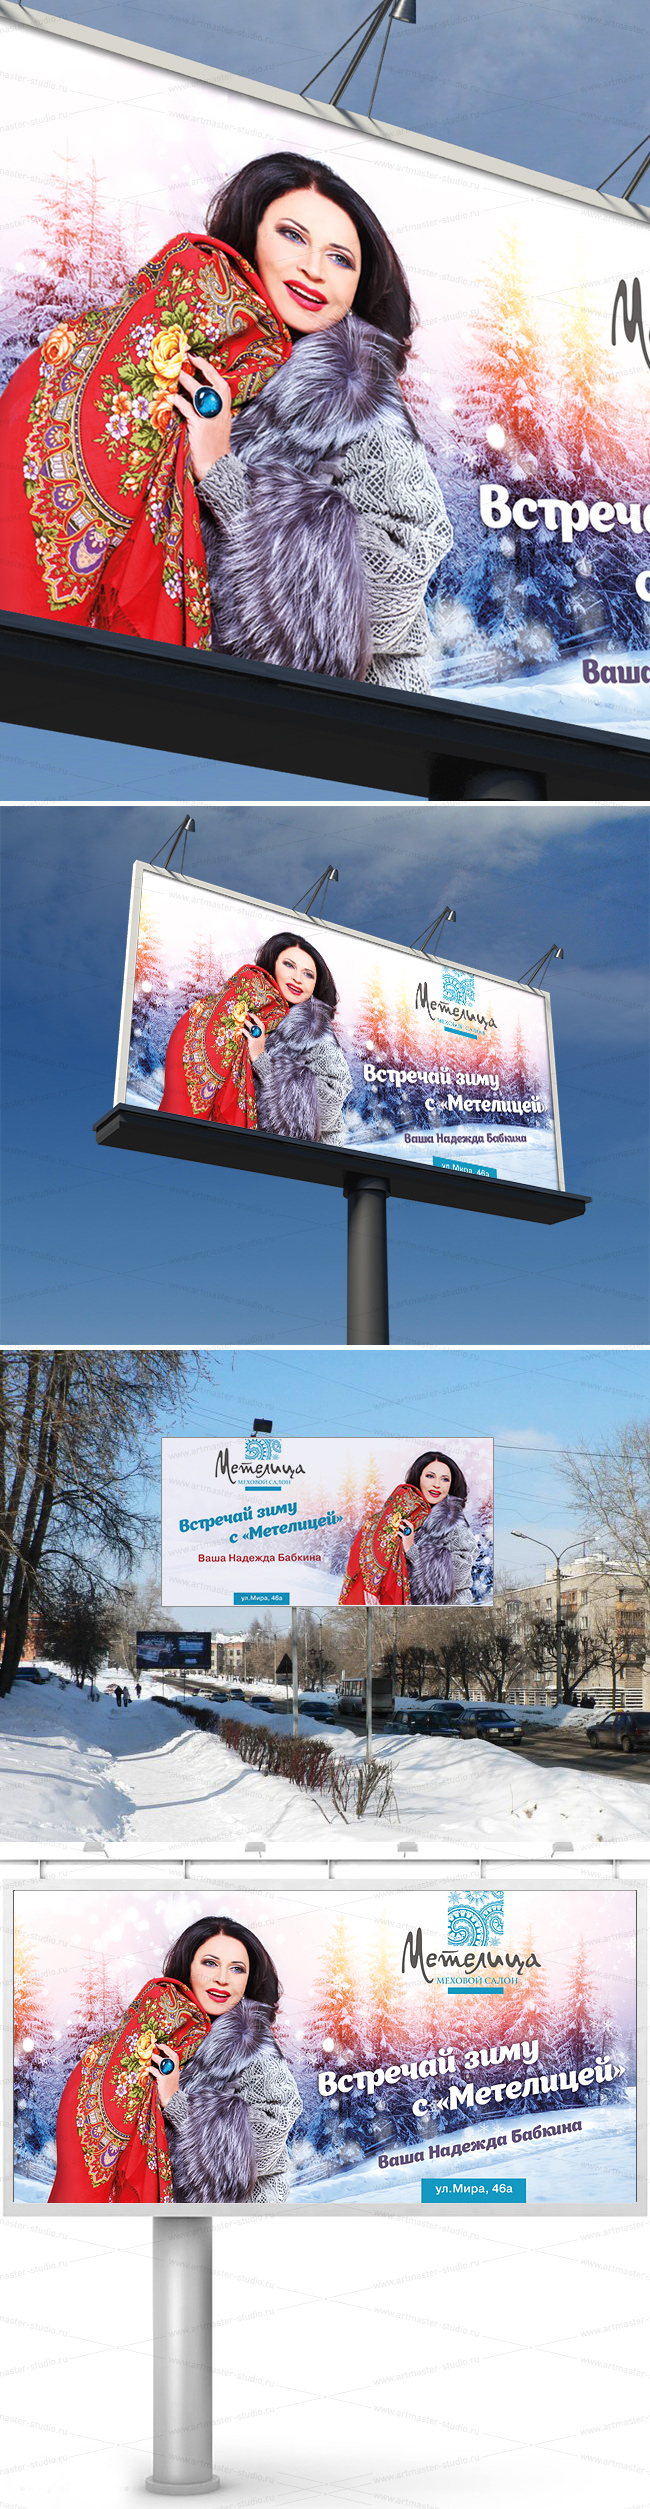 Metelica_Babkina_billboard_am